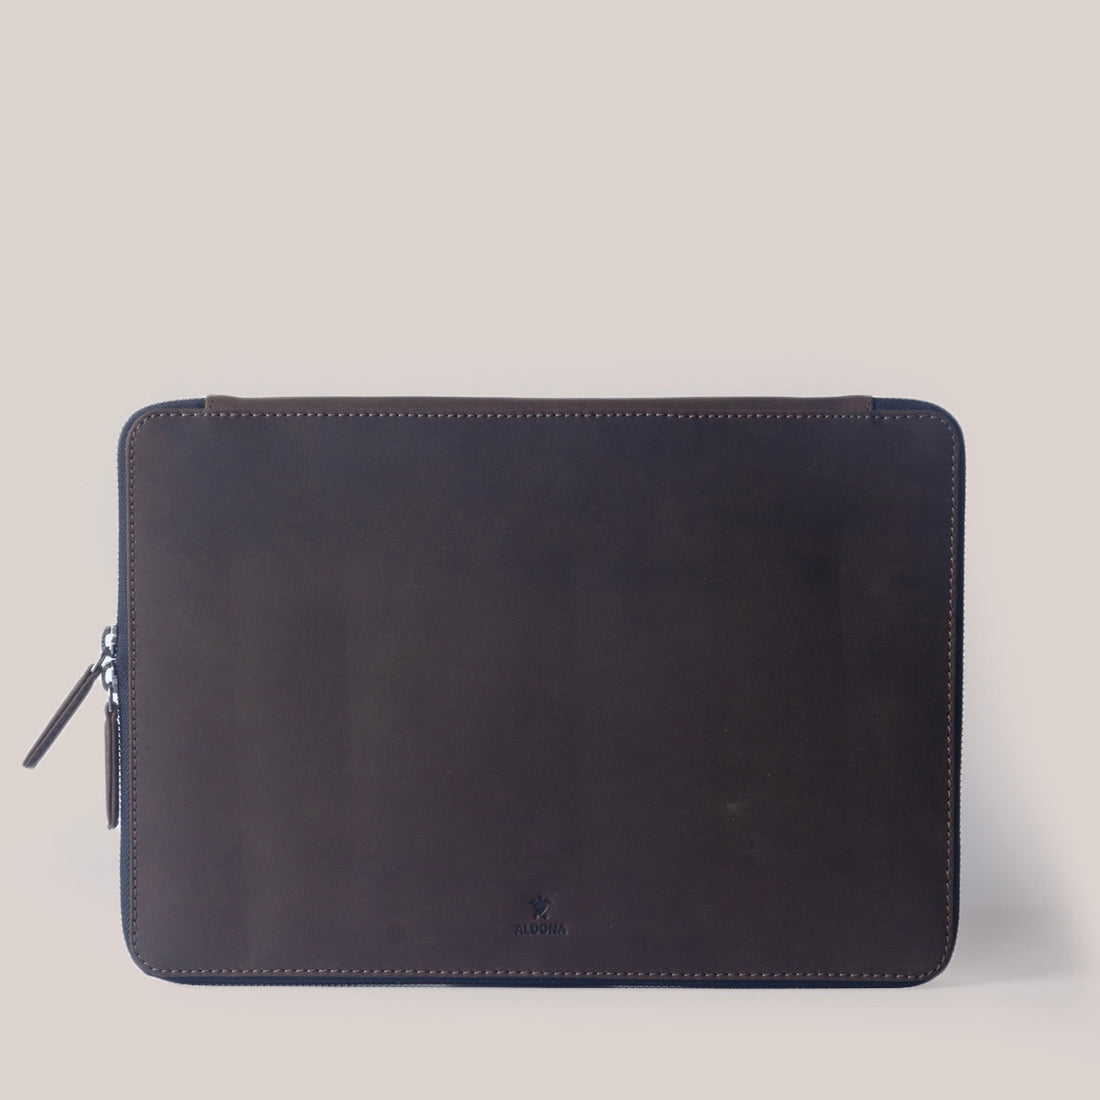 MacBook Pro 13 Zippered Laptop Case - Felt and Tan Crunch